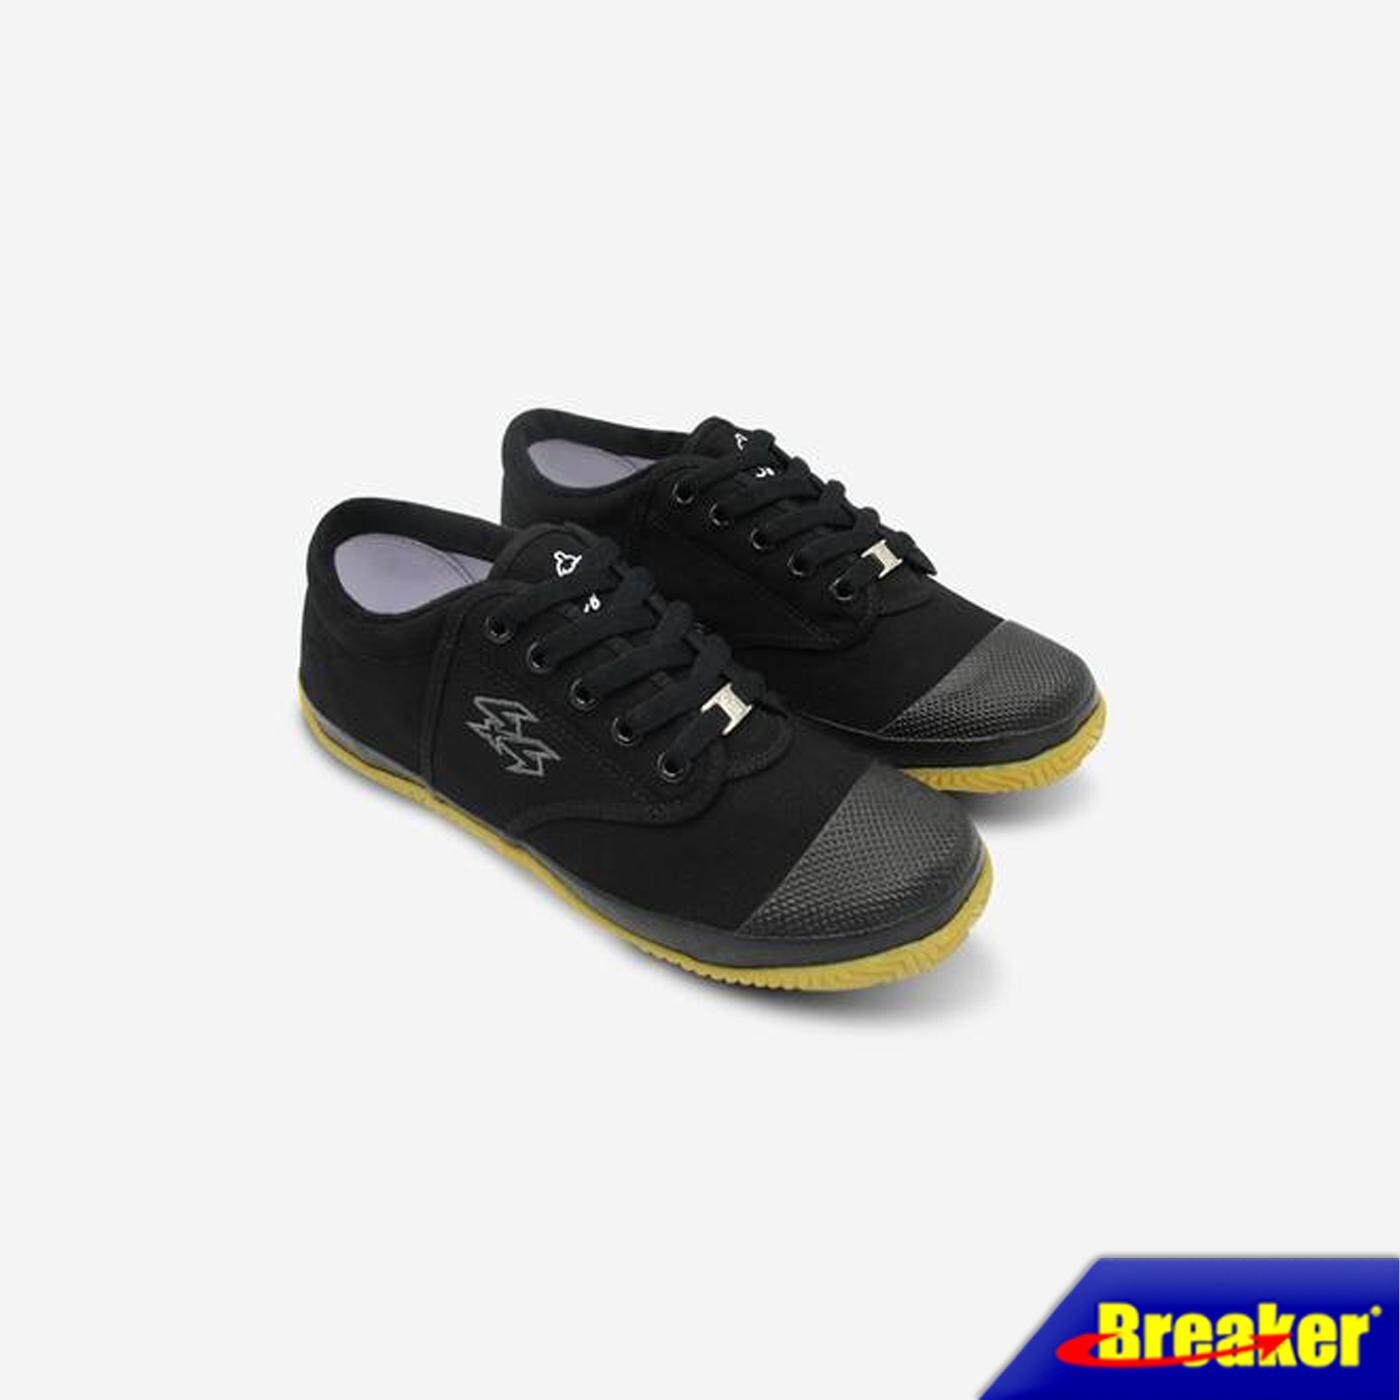 Breaker รองเท้าผู้ชาย รองเท้าผ้าใบนักเรียนเบรกเกอร์  Breaker BK4P สีดำ เท่สั่งได้ดั่งใจ ใส่สบายเท้า